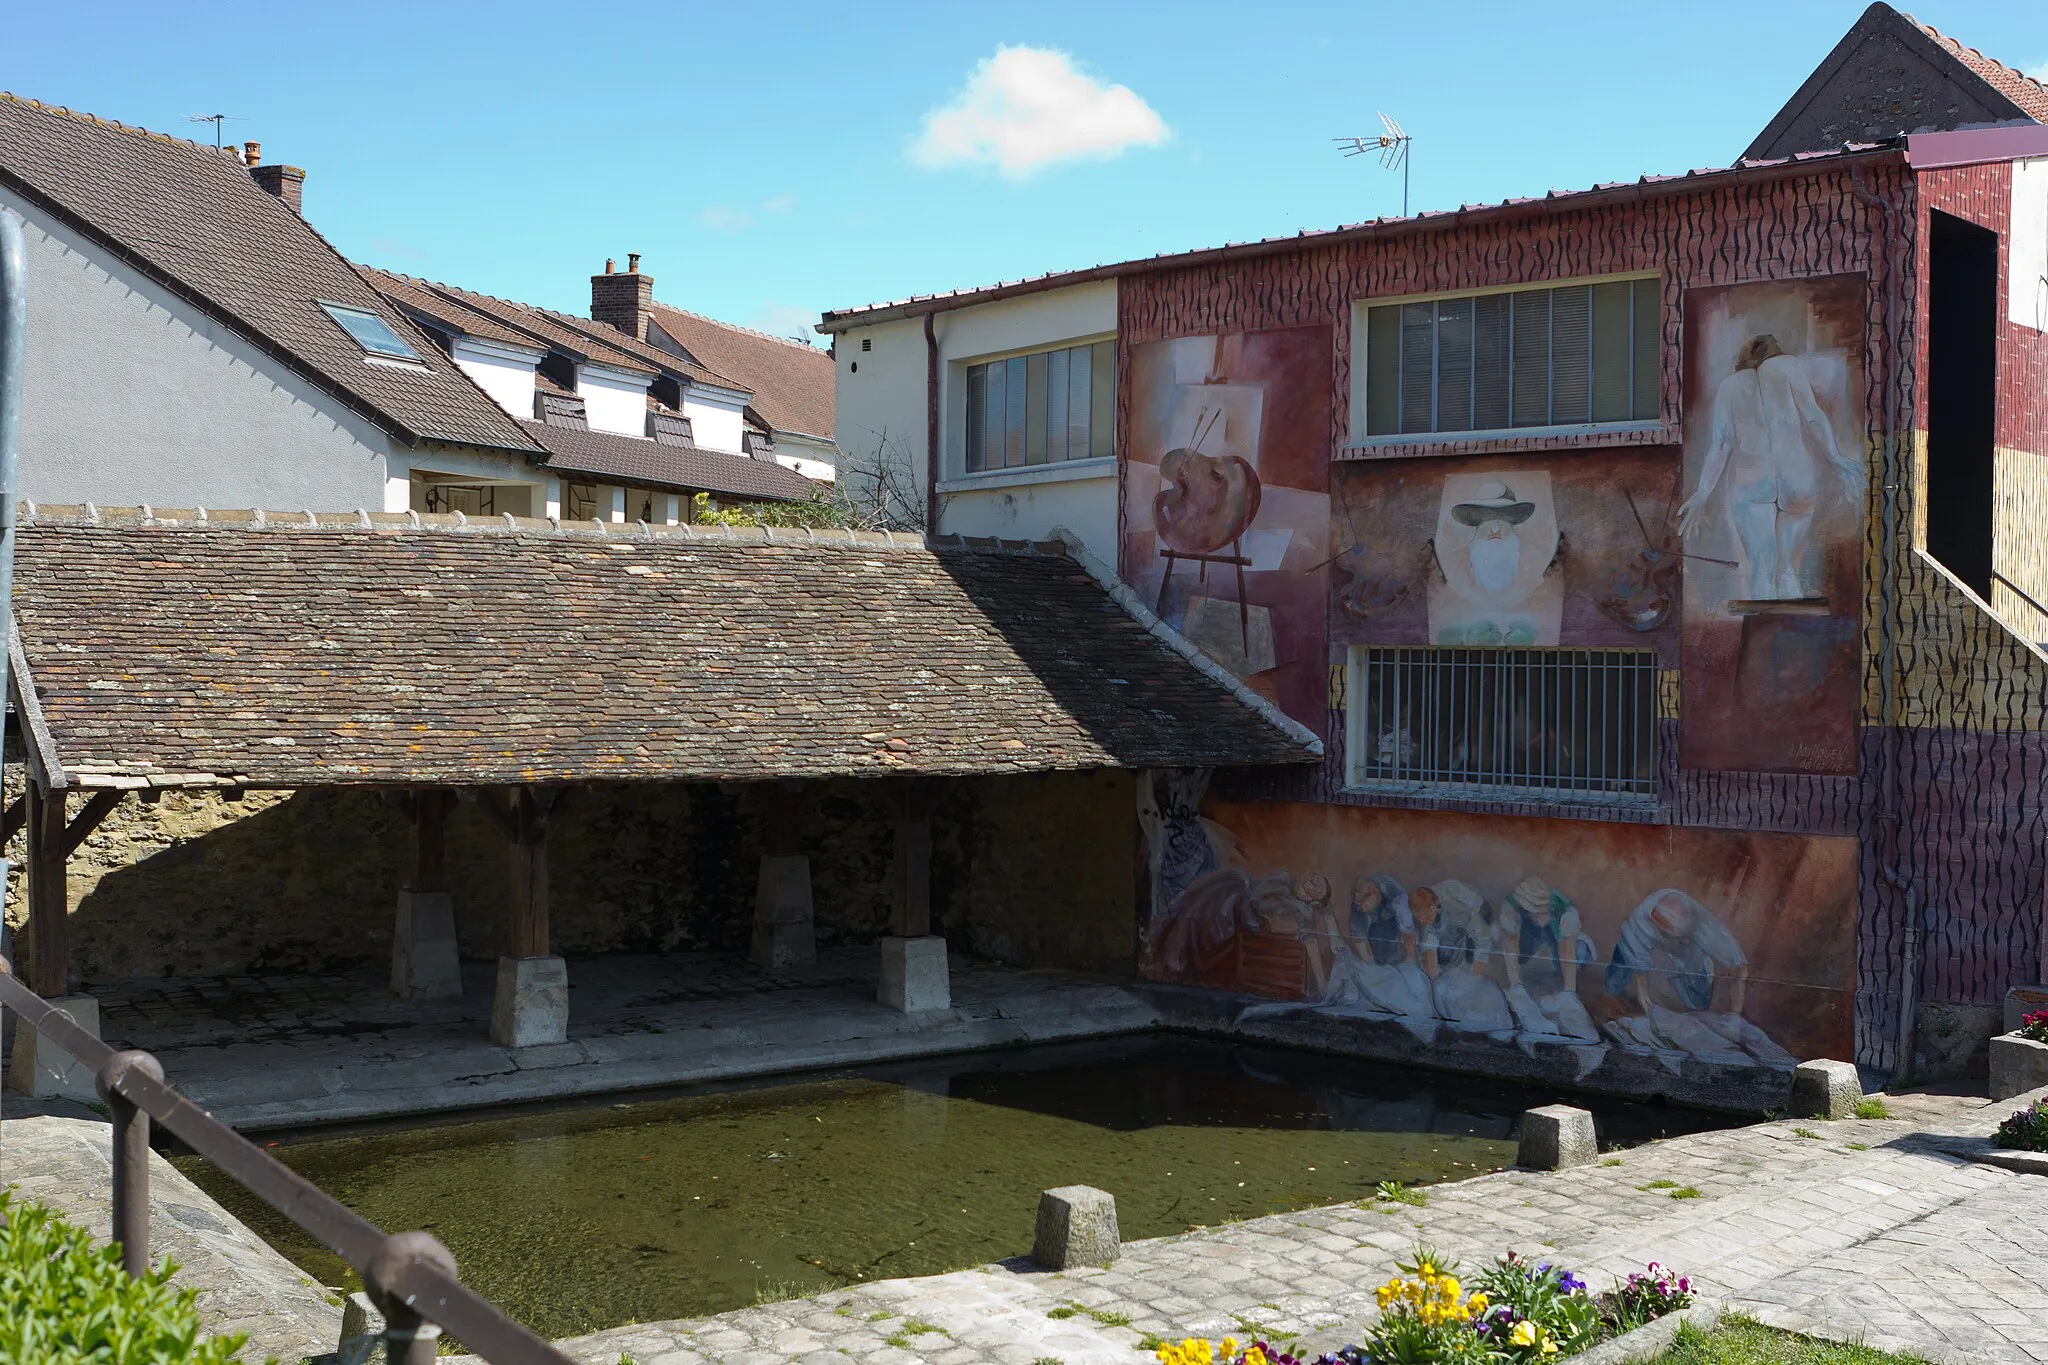 Photo showing: Lavoir de Ballancourt-sur-Essonne, place de l'Eglise, Ballancourt-sur-Essonne, département de L'Essonne, France